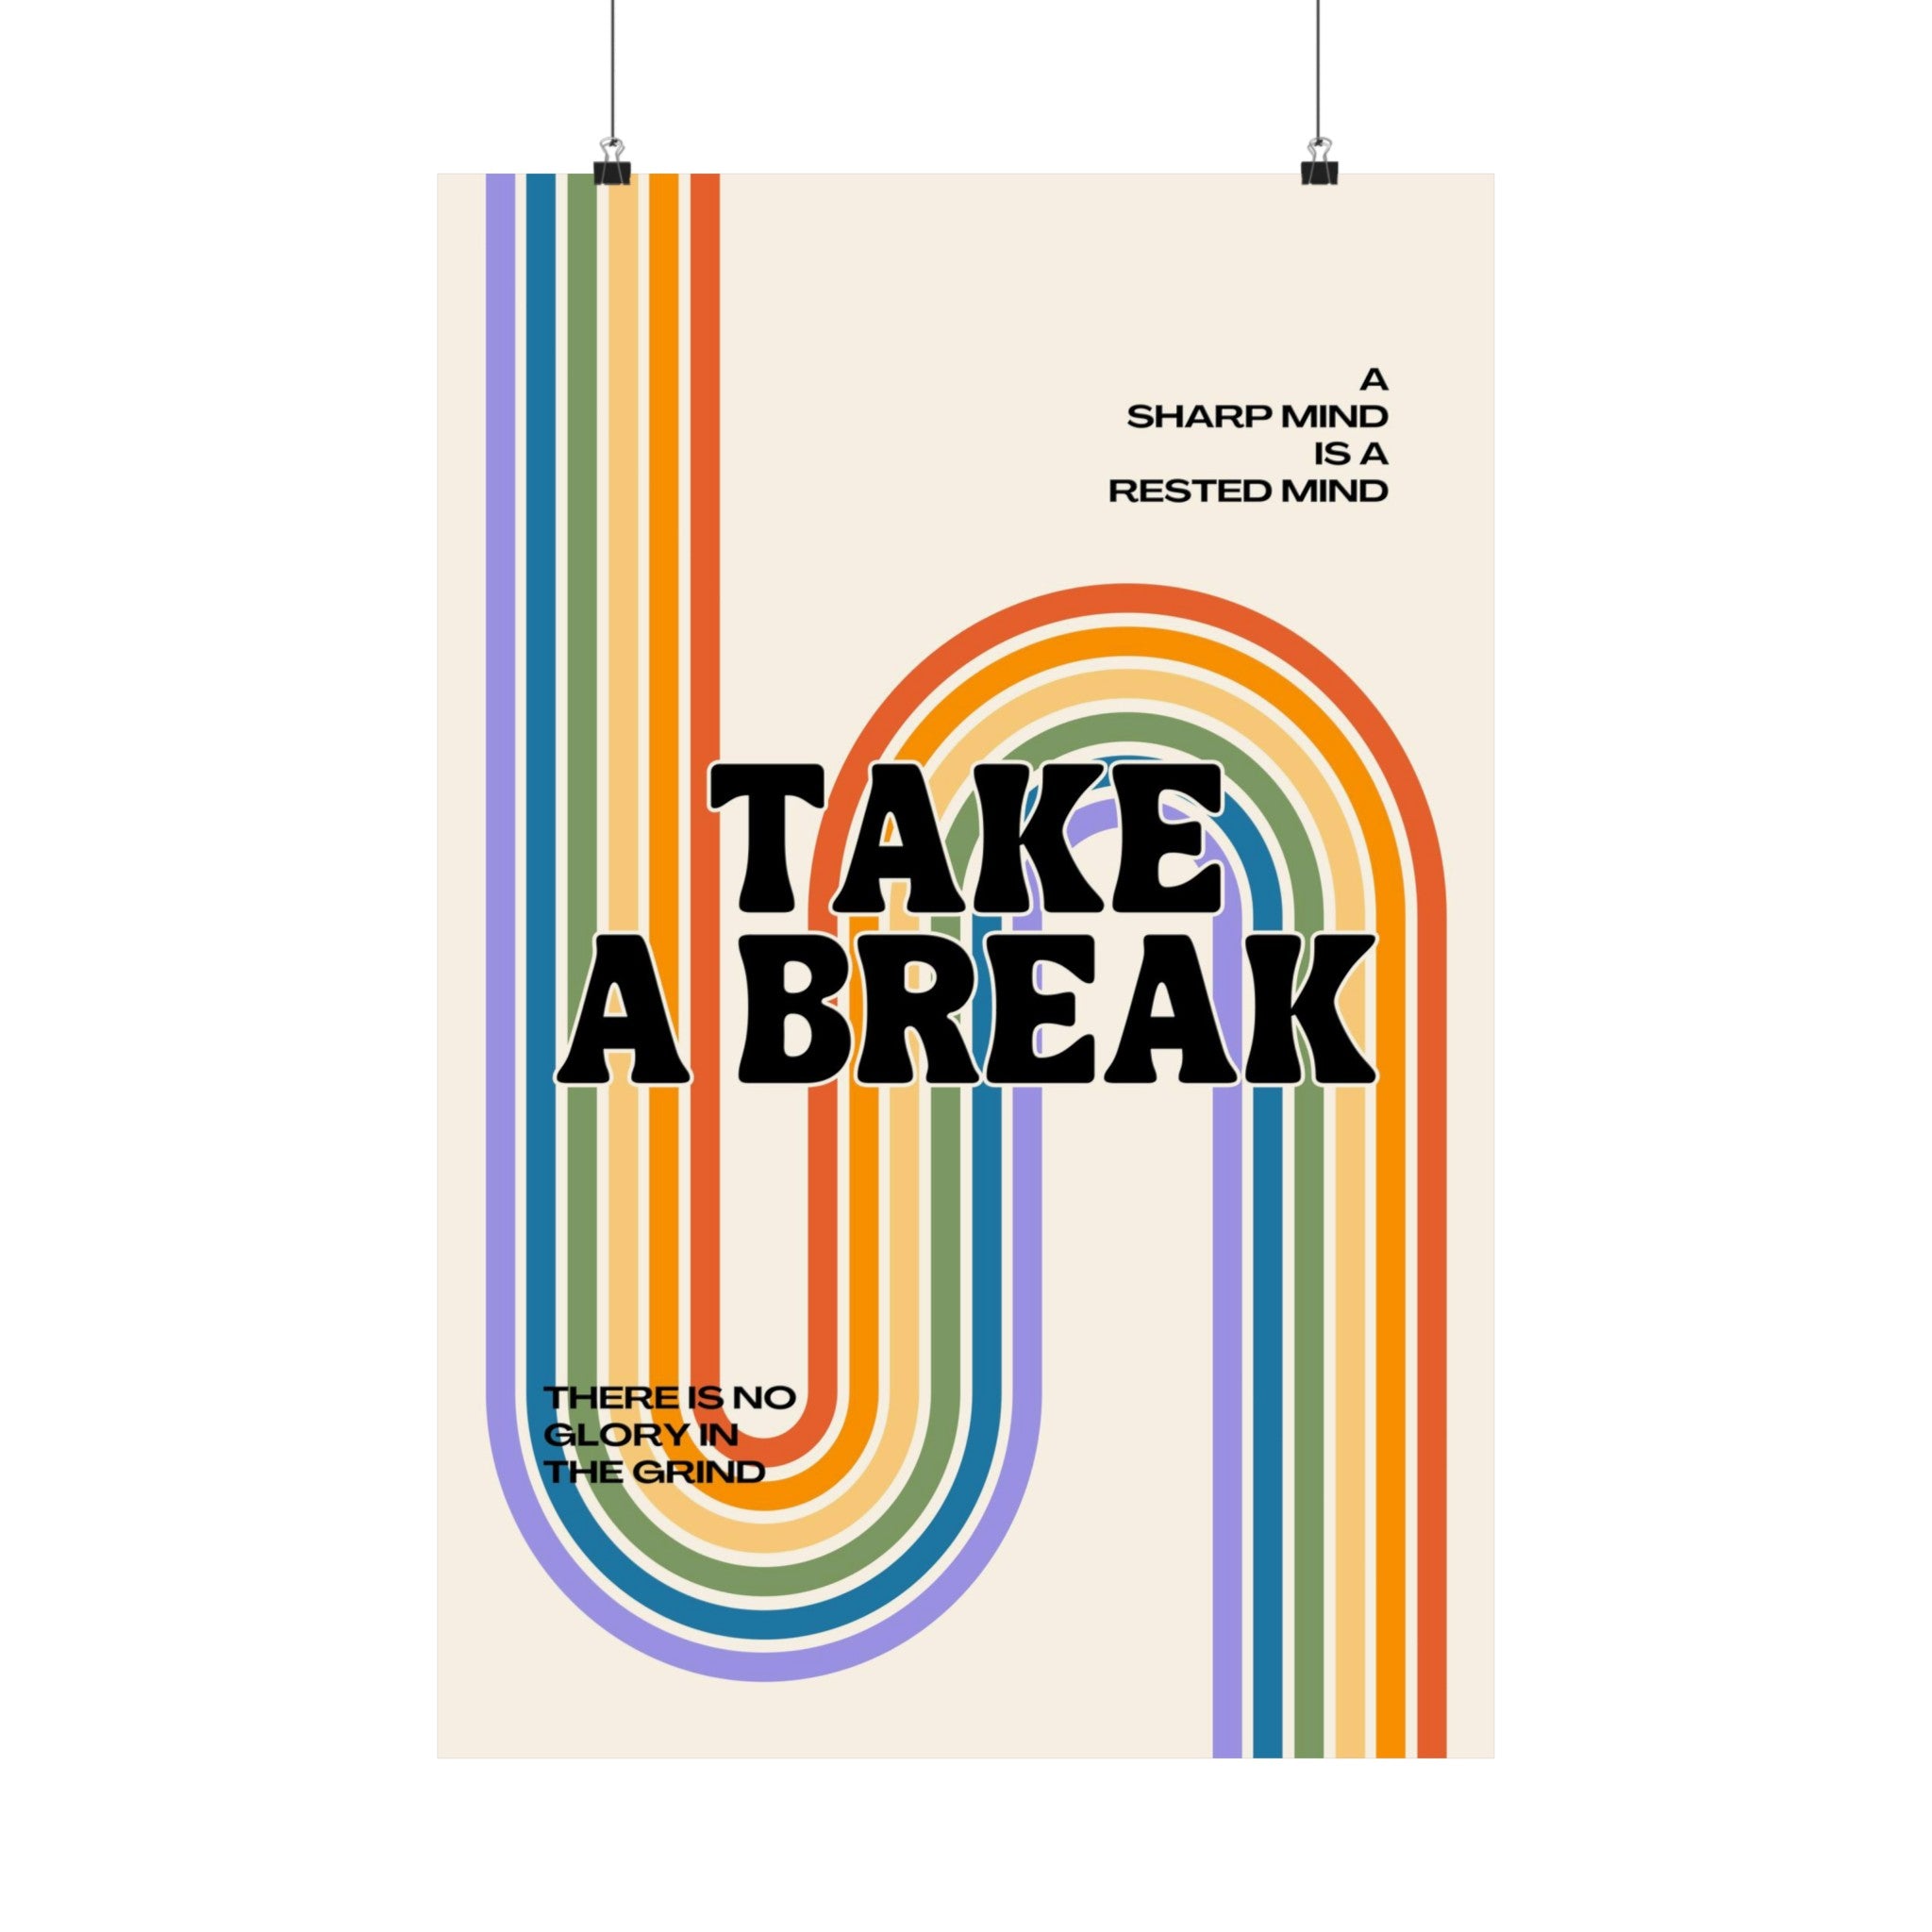 Take a Break Physical Poster